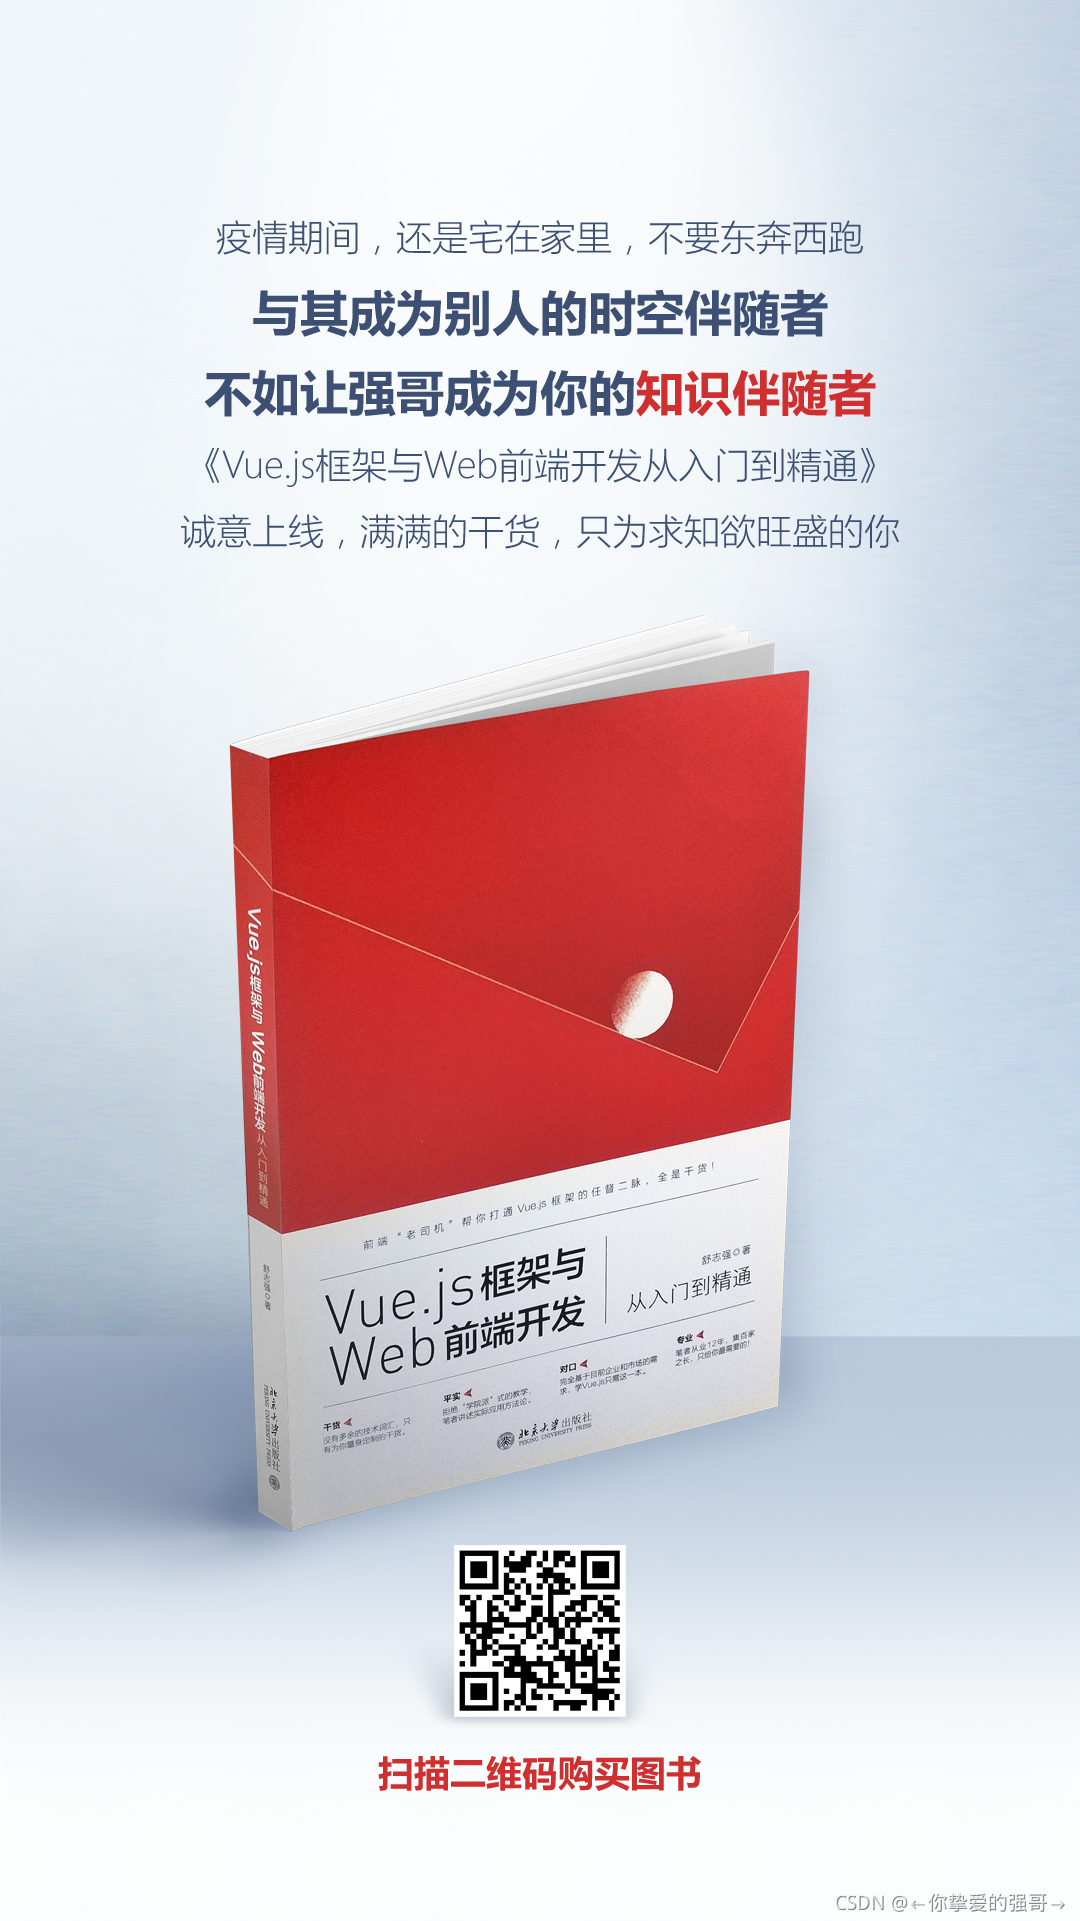 推荐一本Vue.js书籍给你们《Vue.js框架与Web前端开发从入门到精通》